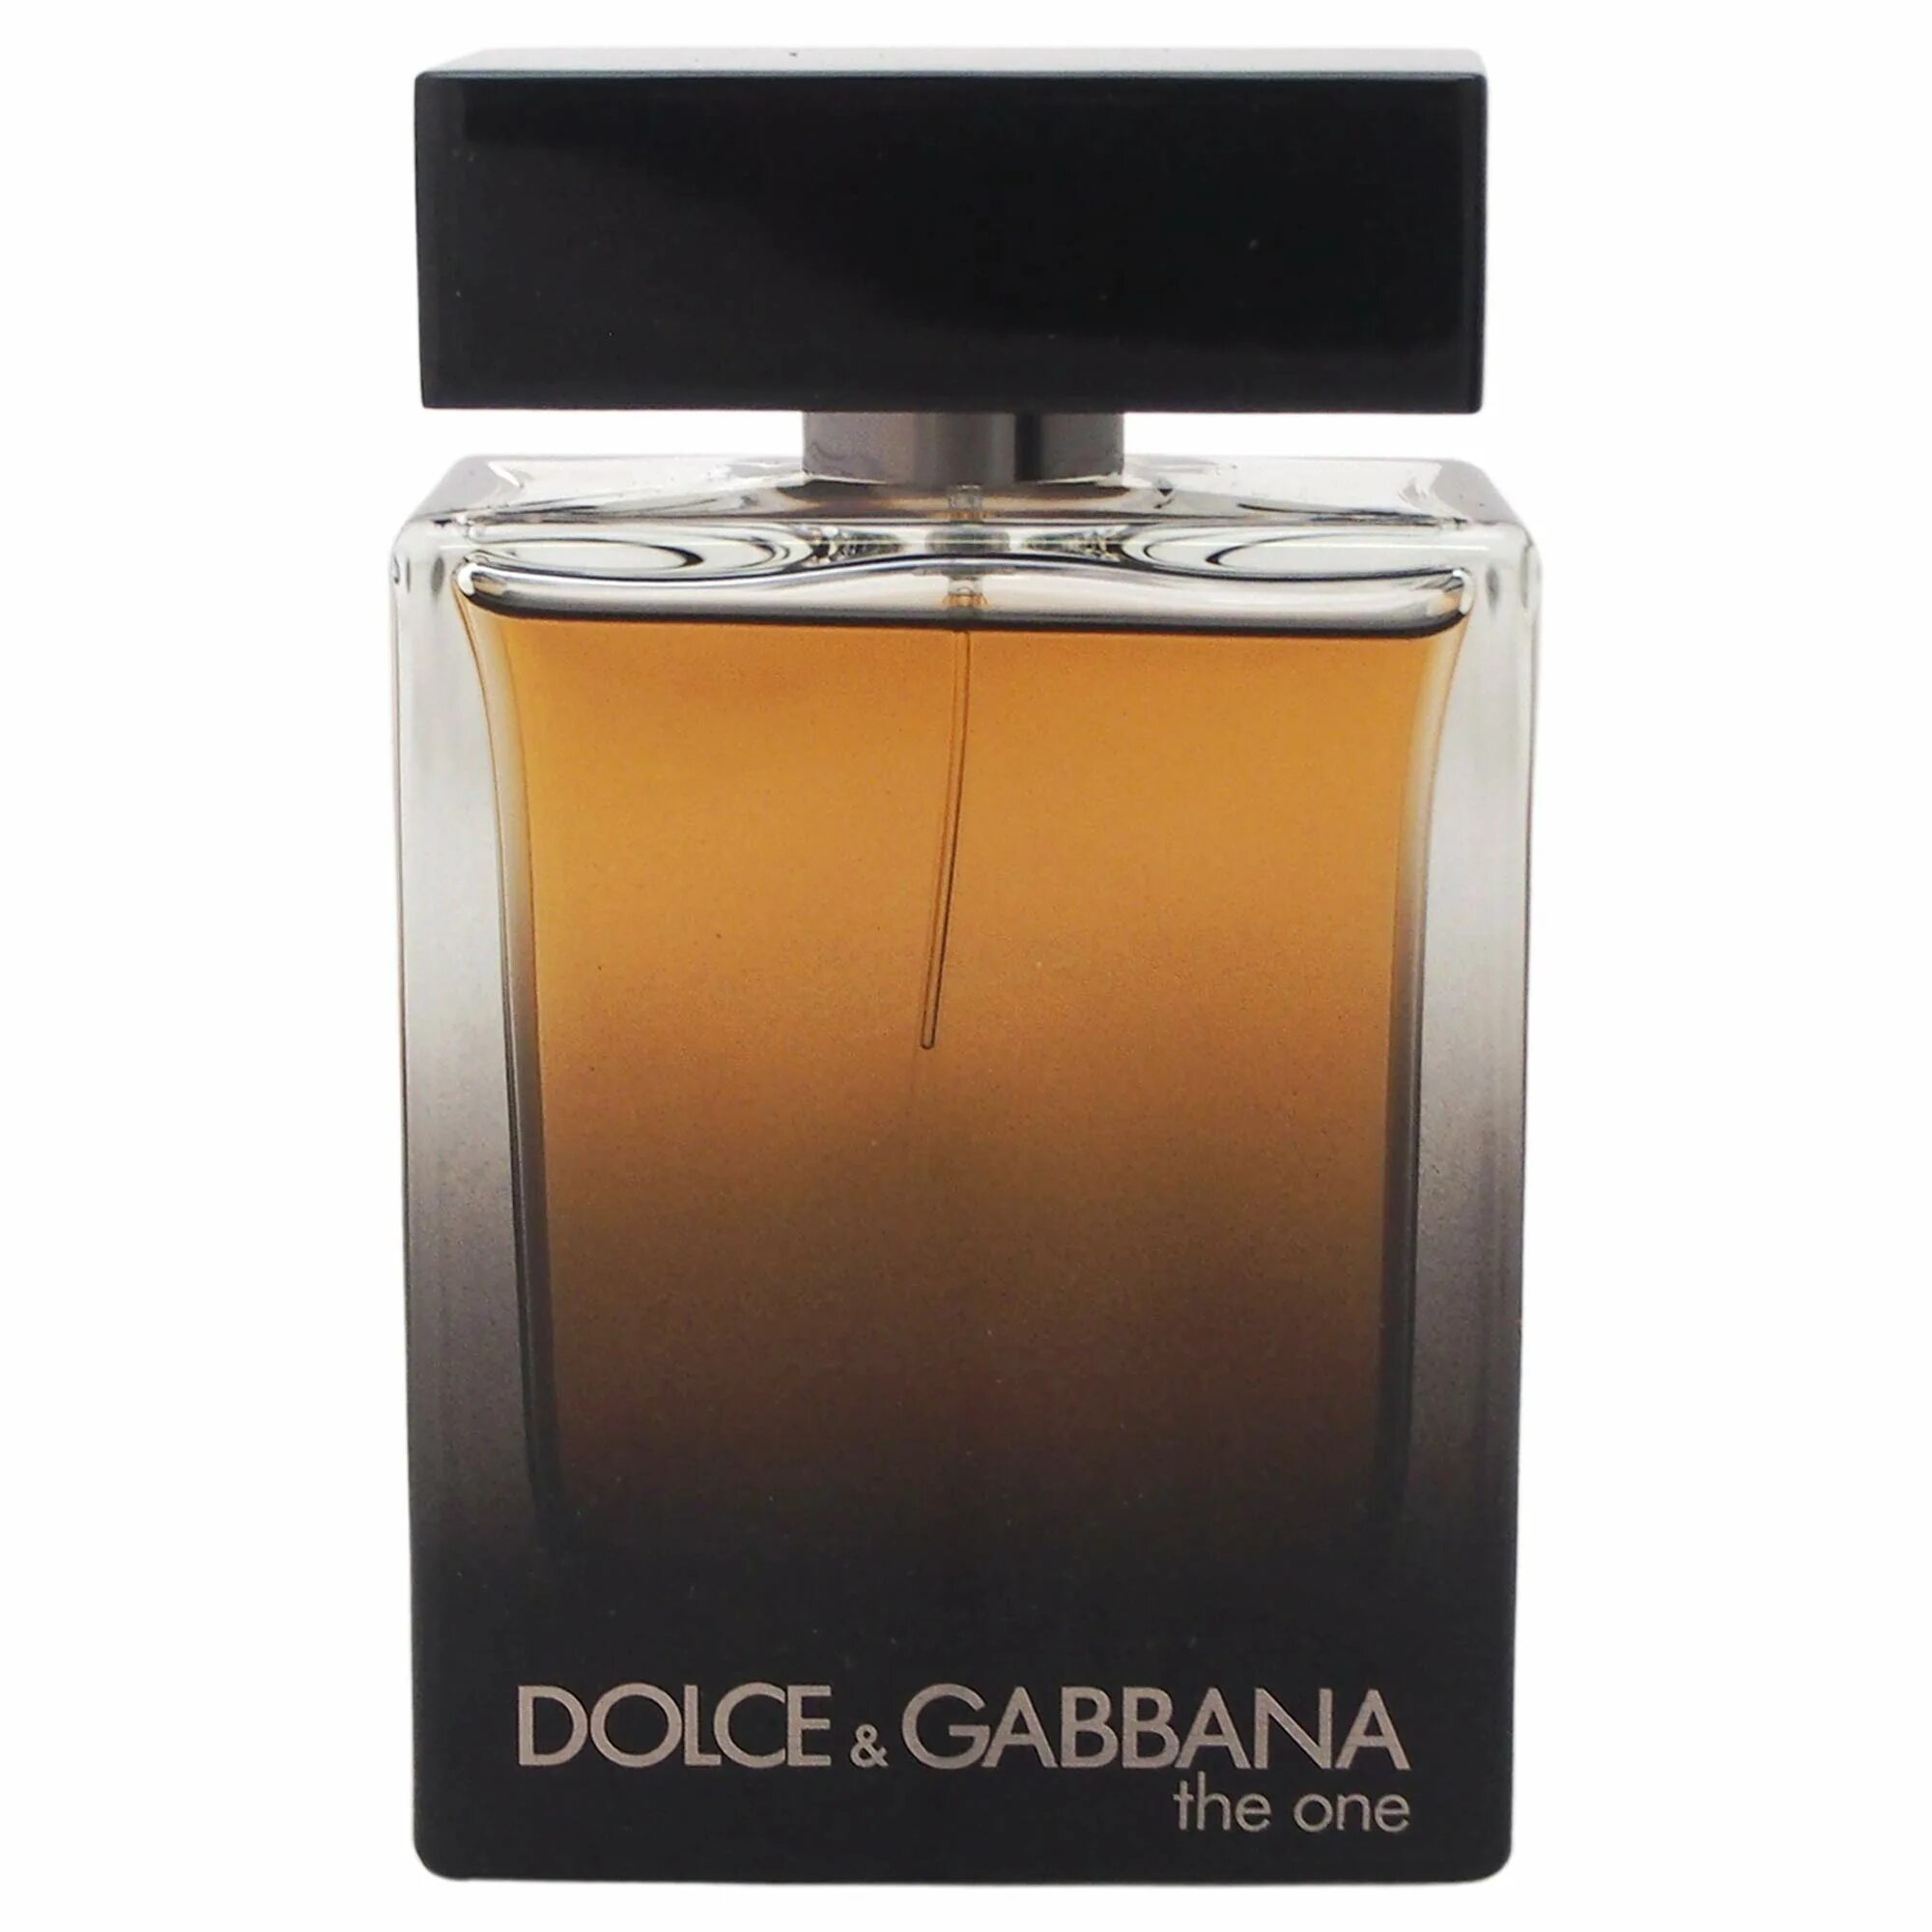 Dolce Gabbana the one for men 100 мл. Dolce Gabbana the one 100ml. Dolce Gabbana the one 100ml мужские. Dolce Gabbana the one for men Eau de Parfum. Упаковка дольче габбана